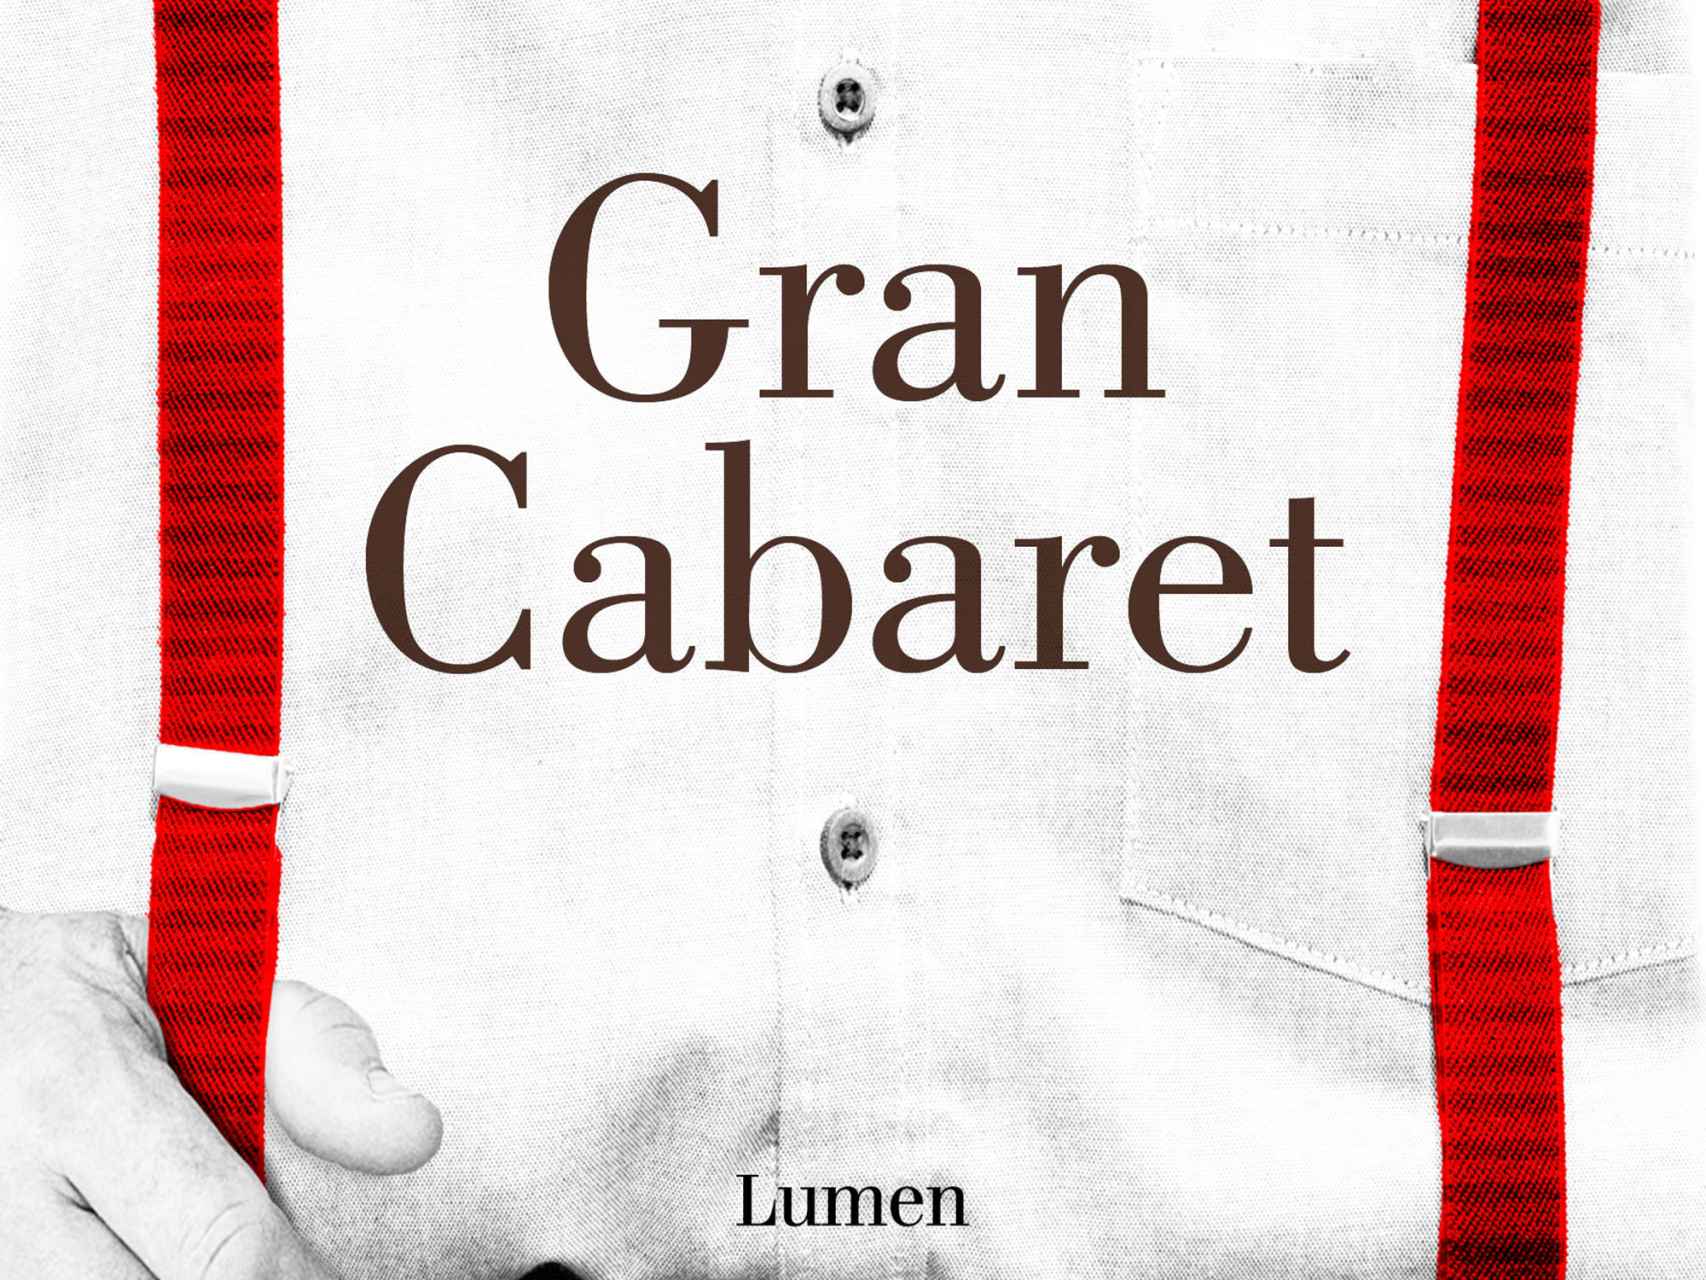 Portada de Gran Cabaret, la obra por la que ha sido premiada Ana María Bejarano.